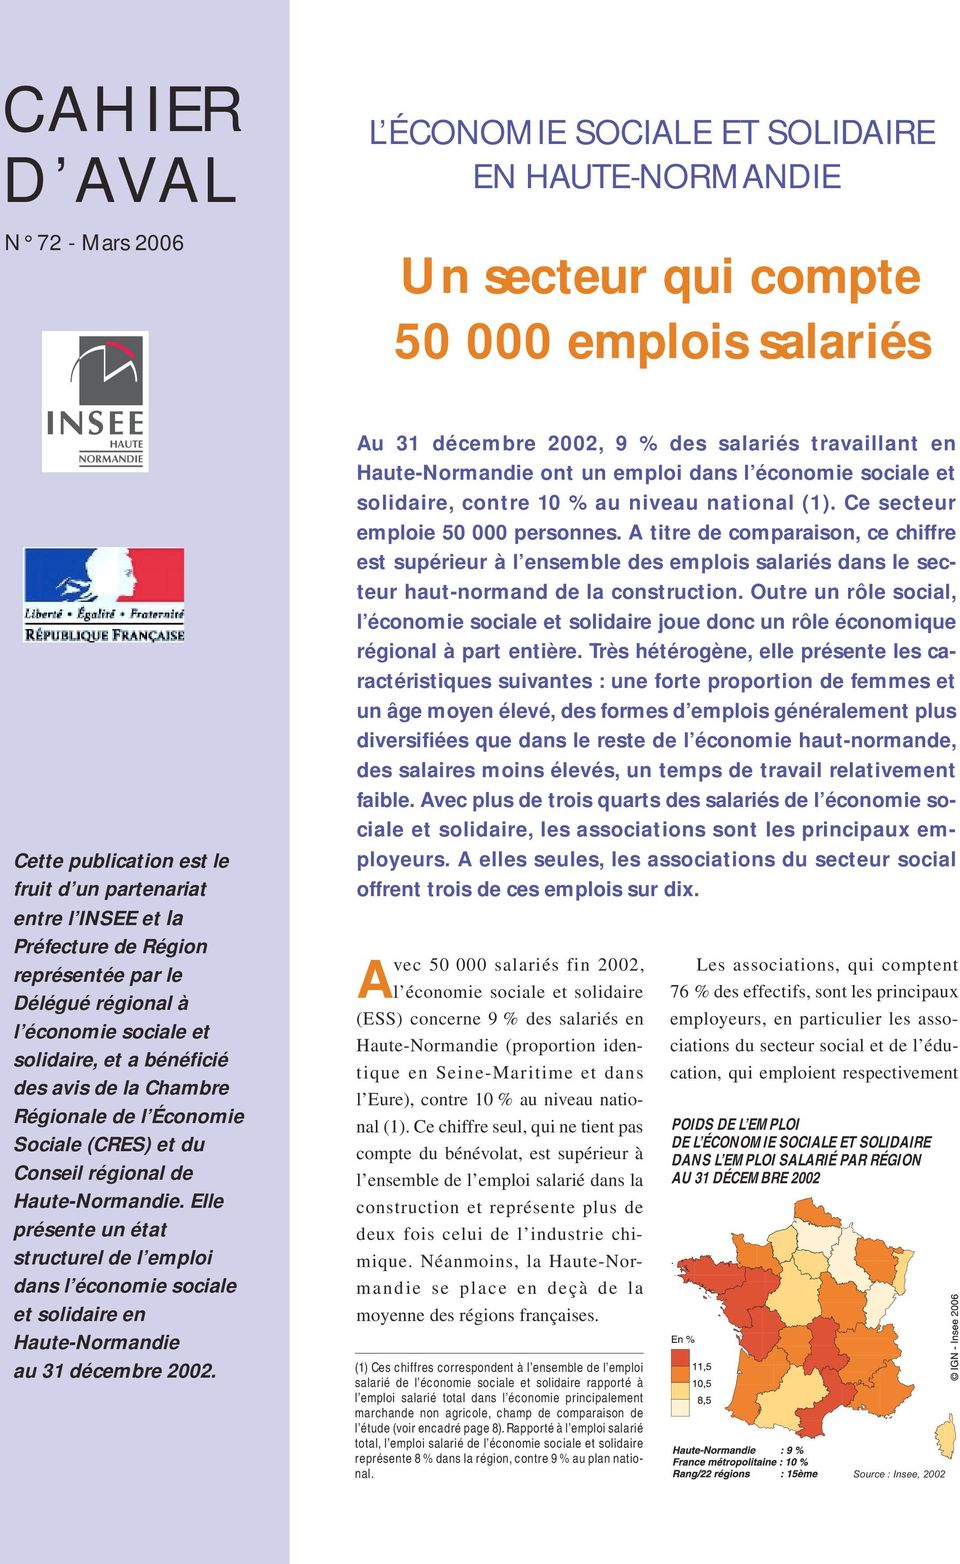 Haute-Normandie. Elle présente un état structurel de l emploi dans l économie sociale et solidaire en Haute-Normandie au 31 décembre 2002.